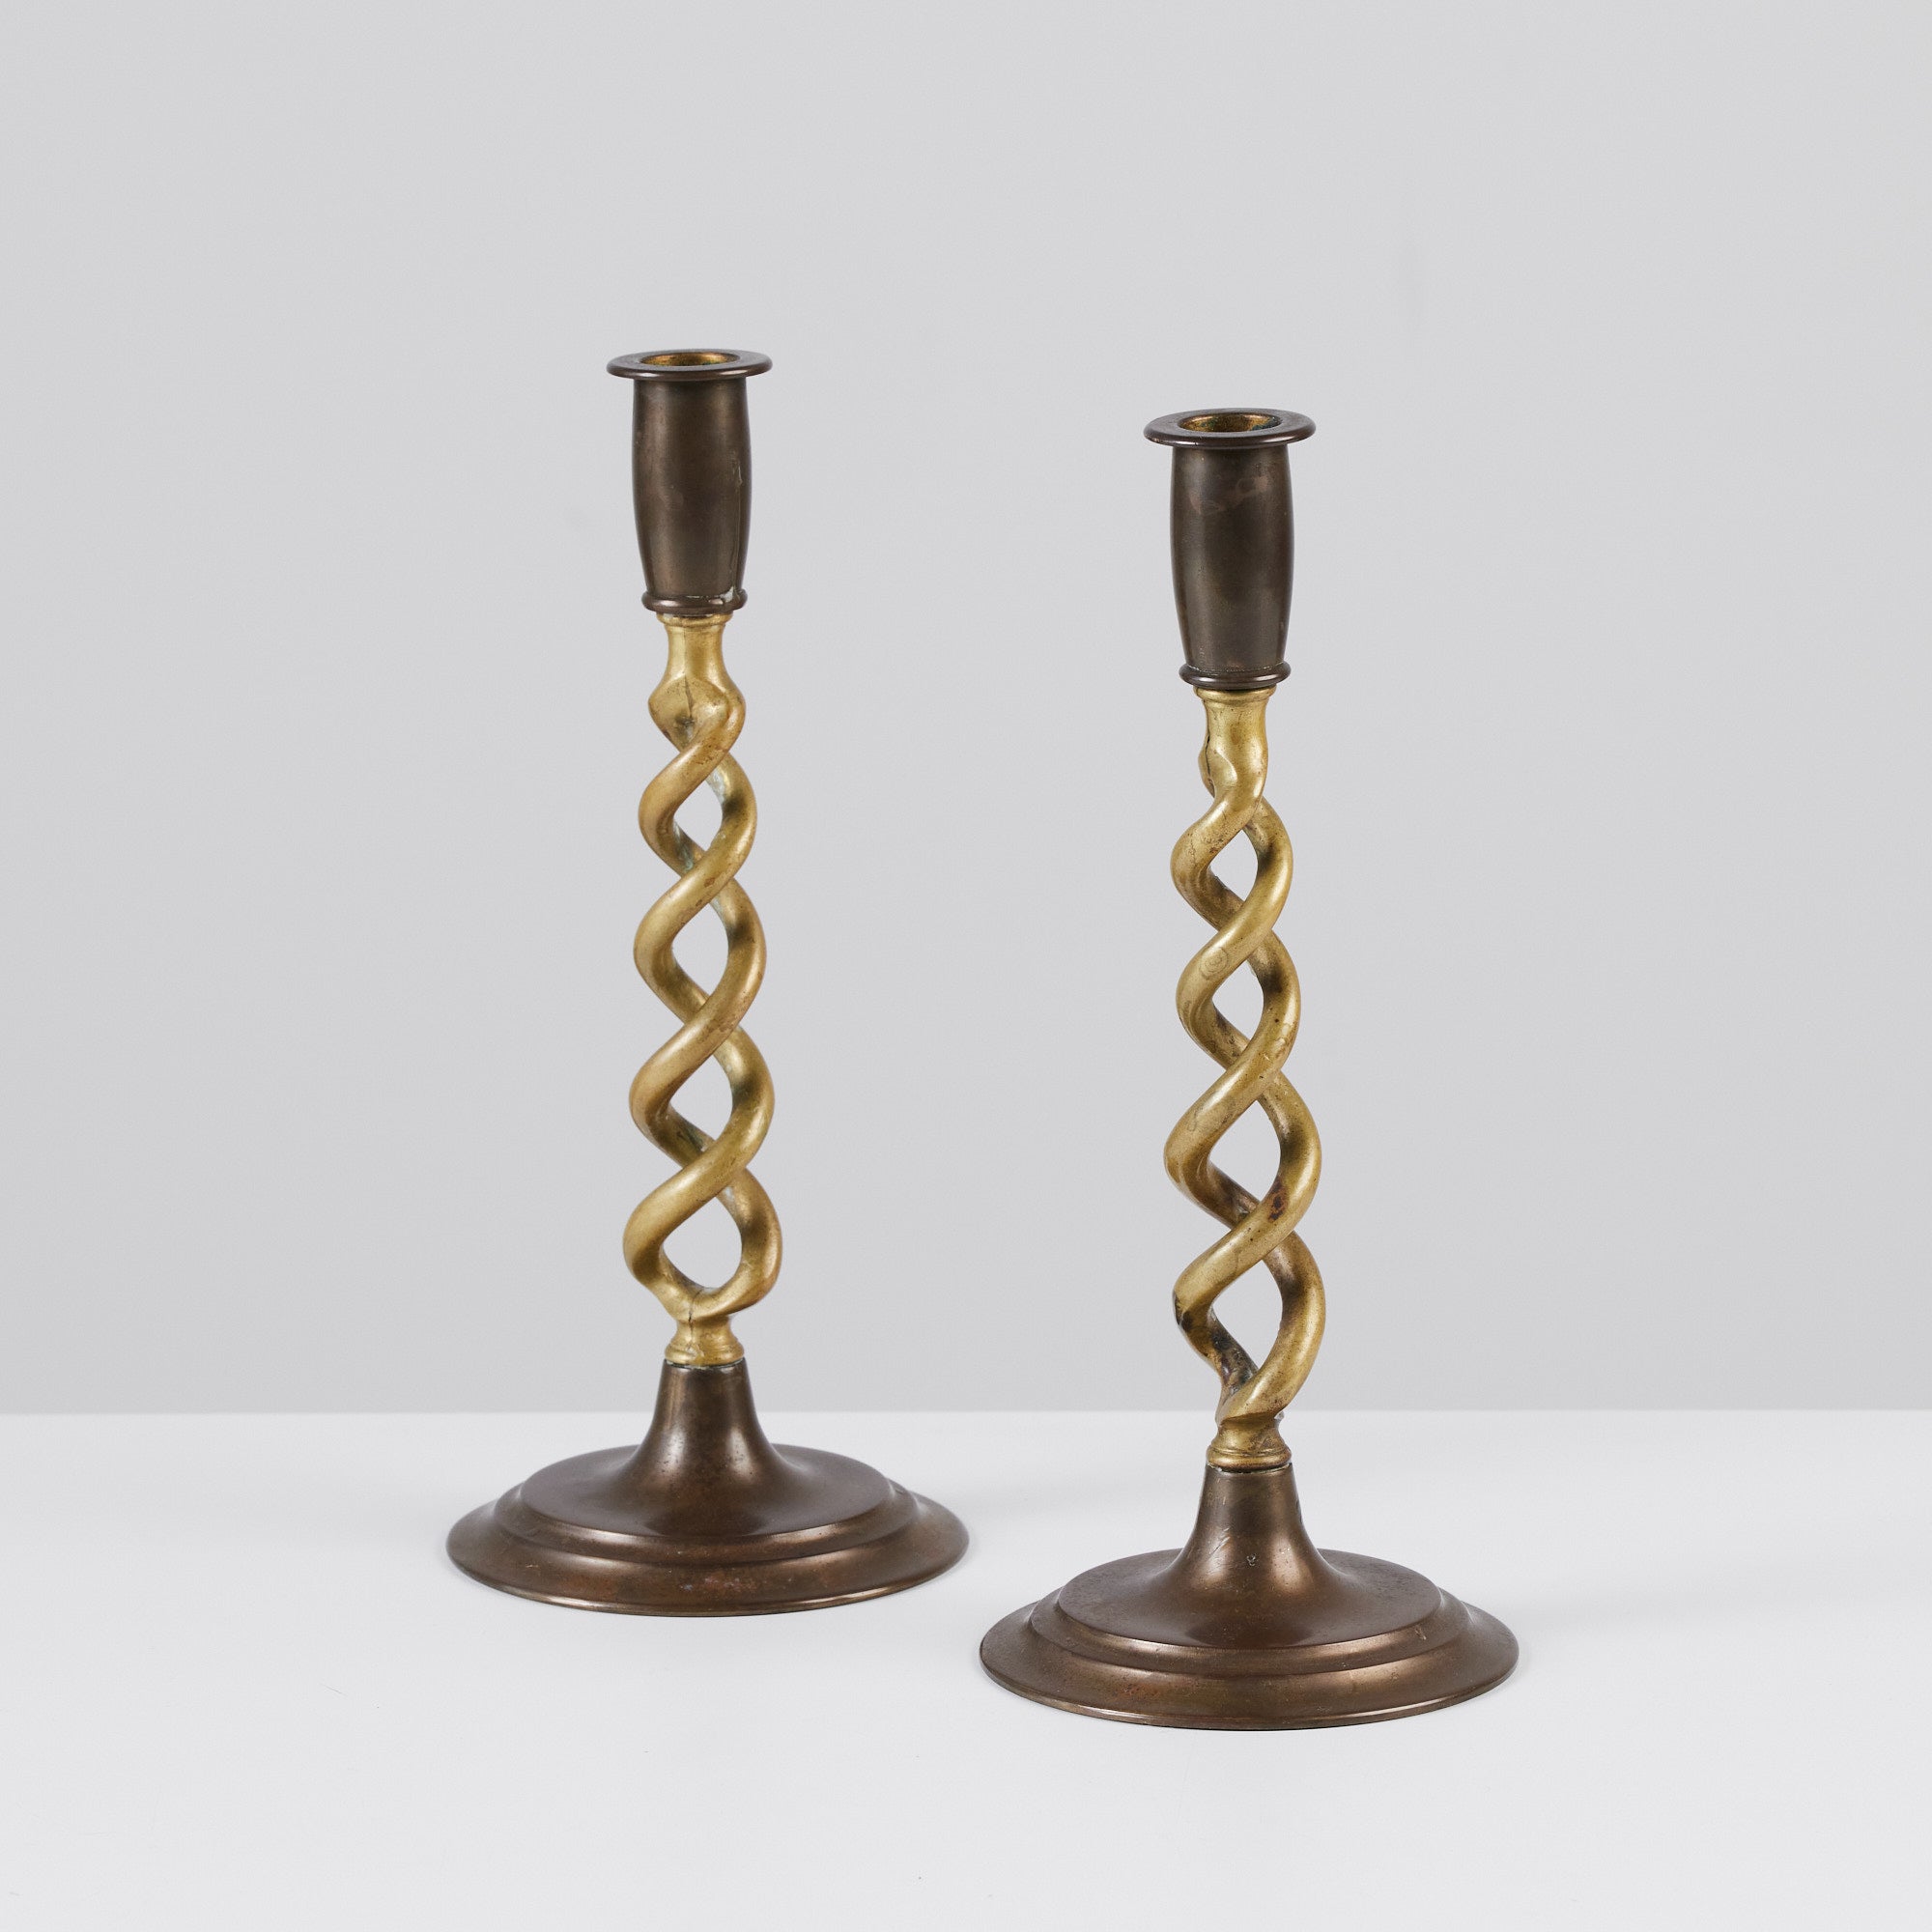 Pair of Brass Barley Twist Candlesticks by Peerage – DEN